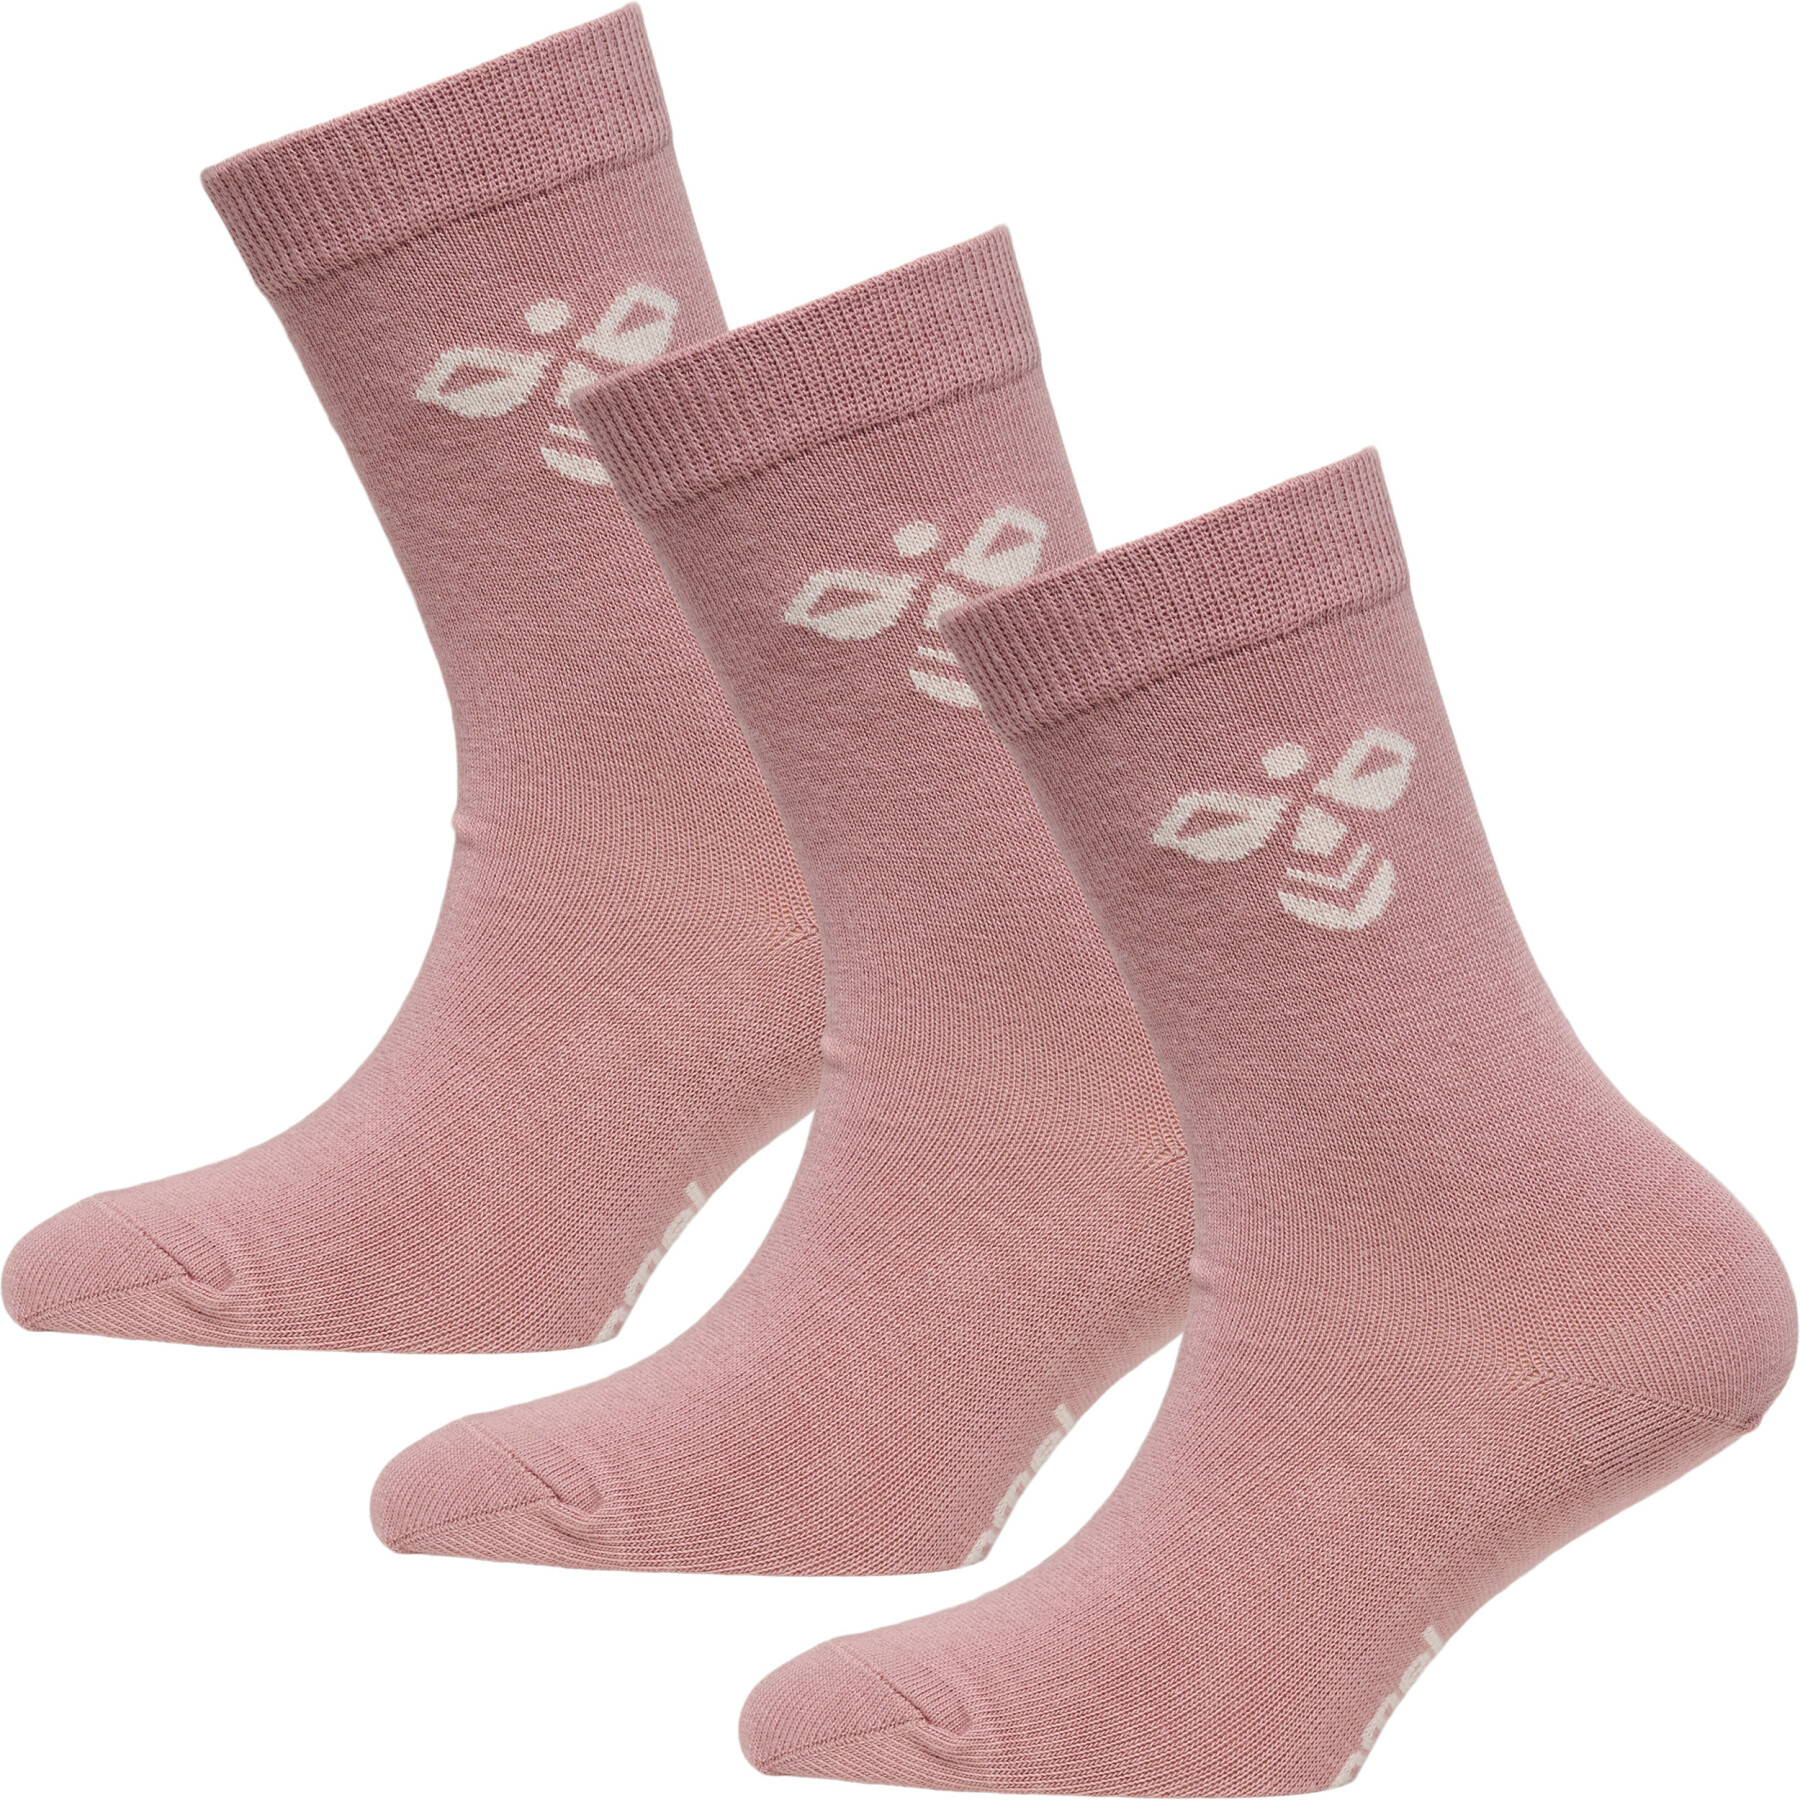 Children's socks Hummel Sutton (3x3)